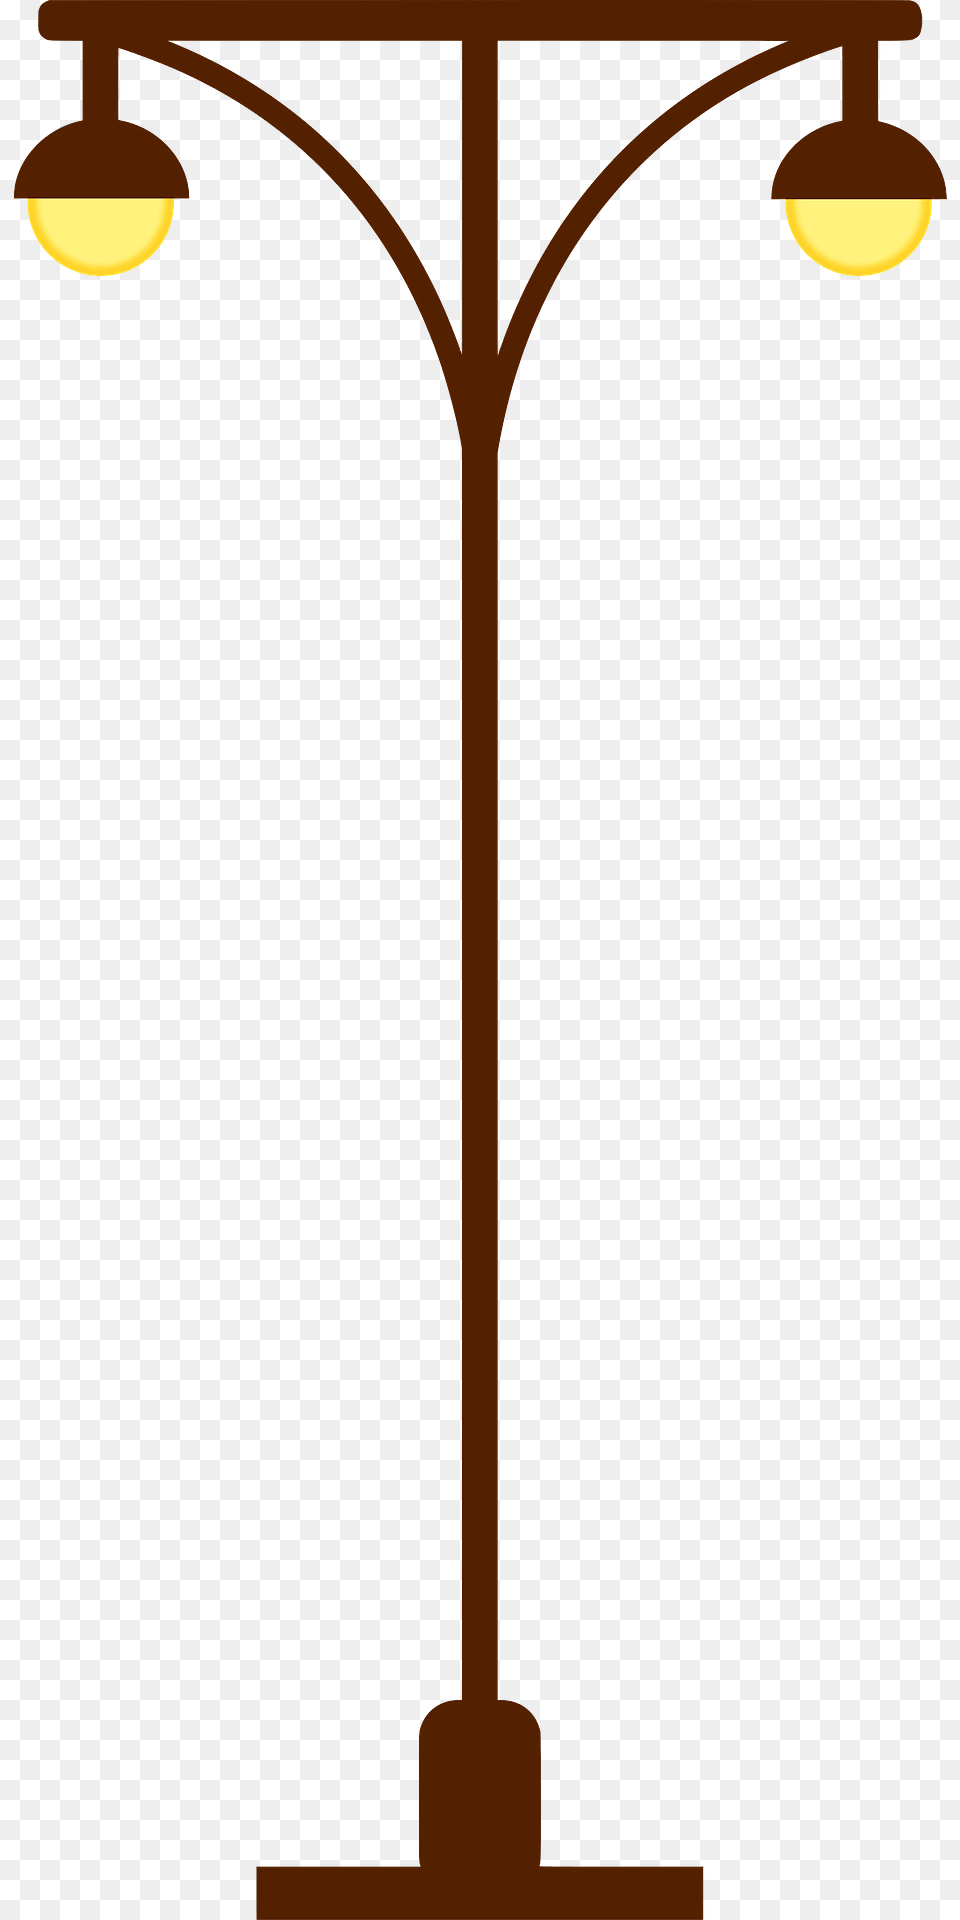 Lamp Post Clipart, Cross, Symbol, Lamp Post Png Image